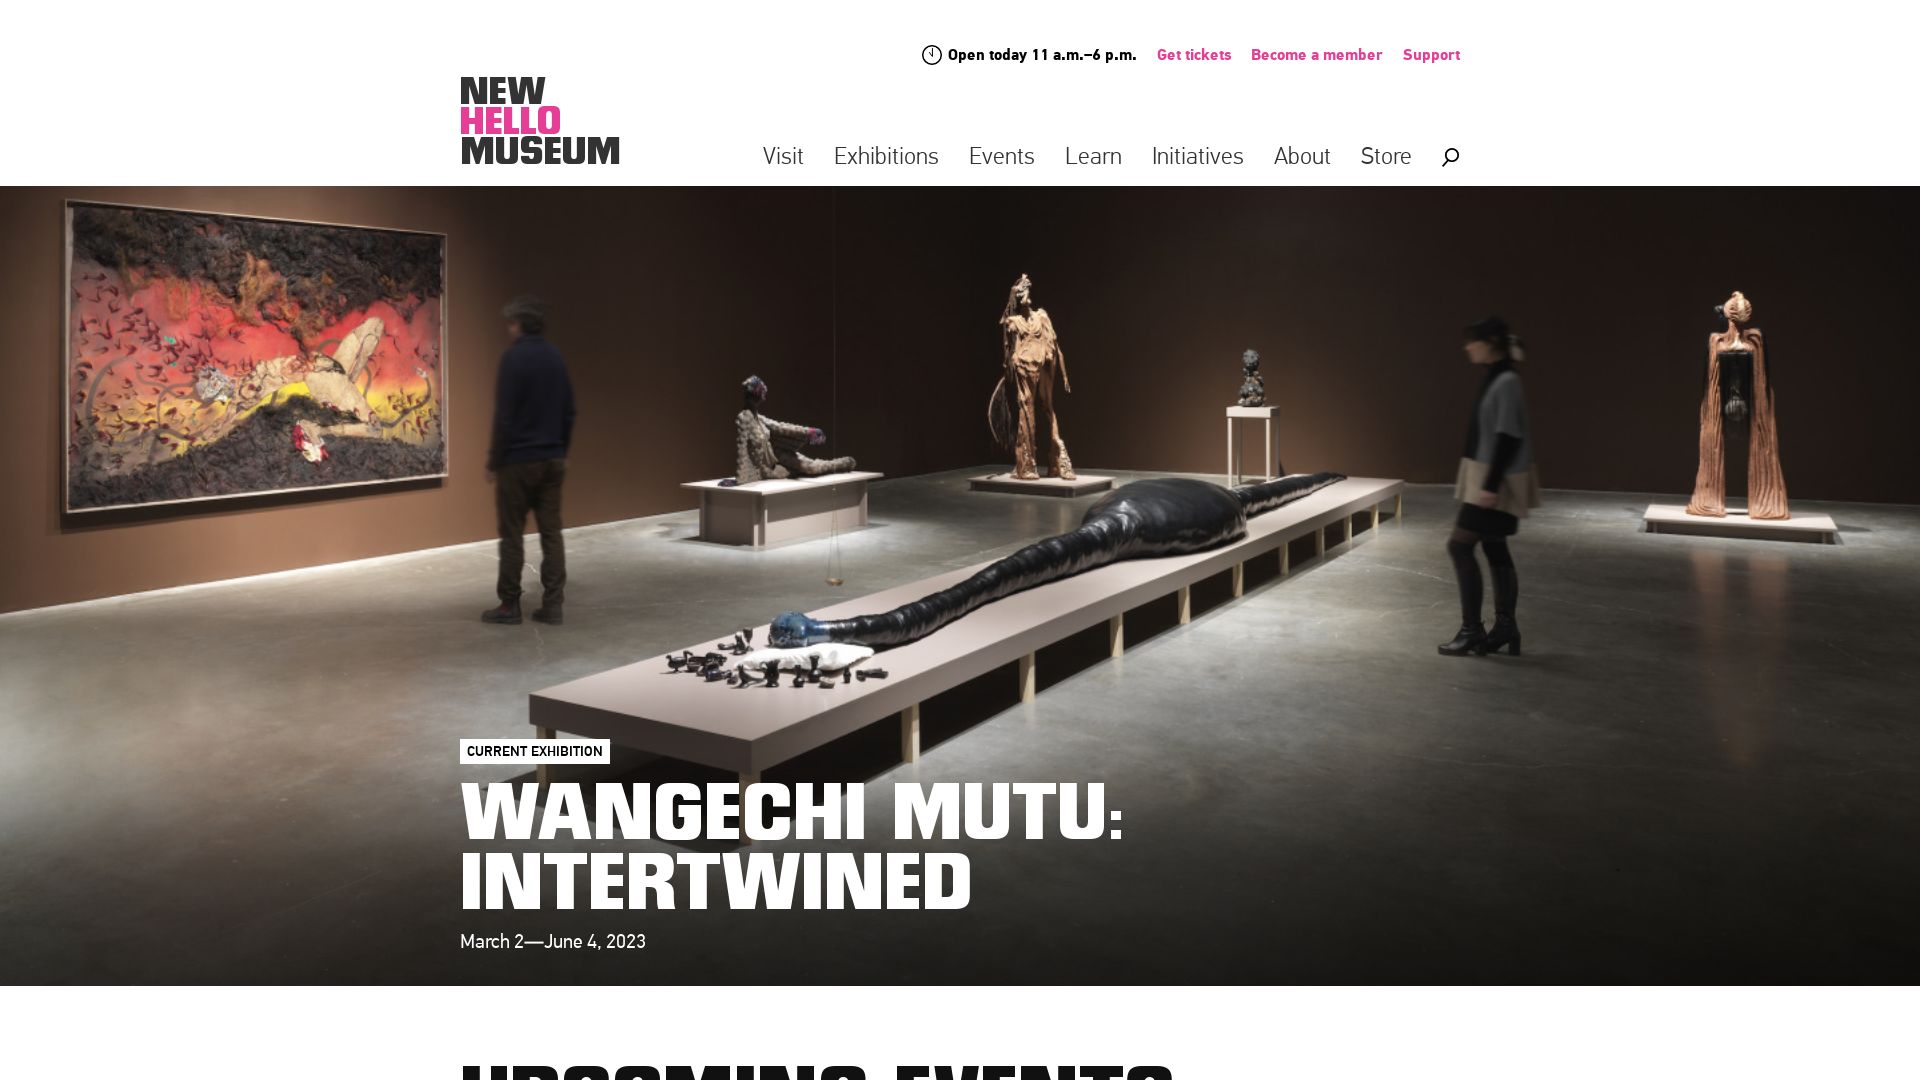 Stato del sito web newmuseum.org è   ONLINE